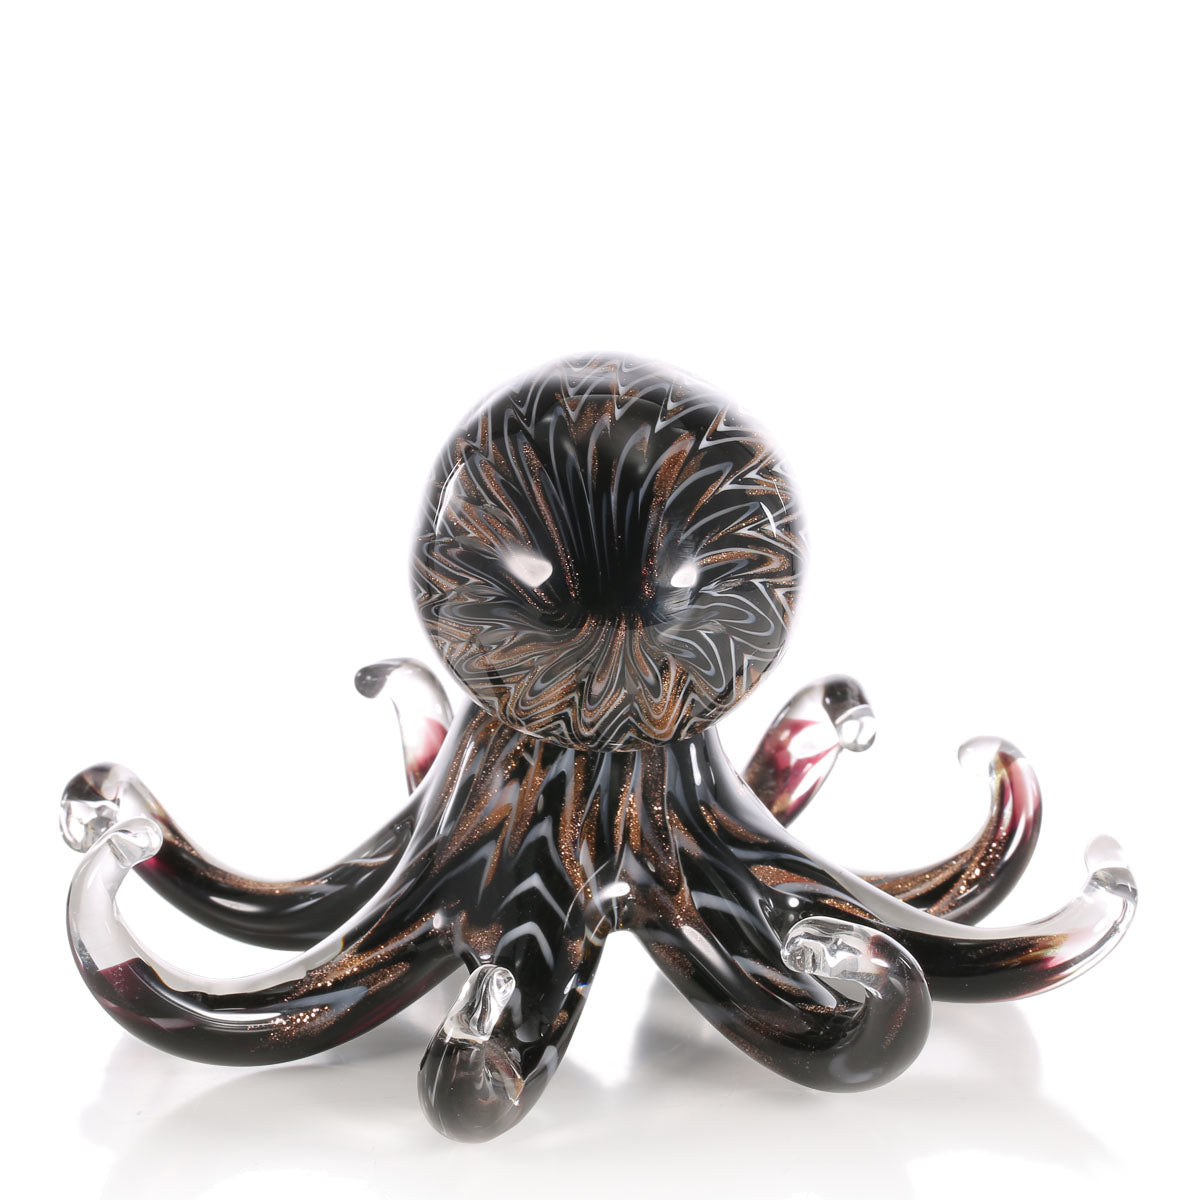 Octopus Decorative Ornament